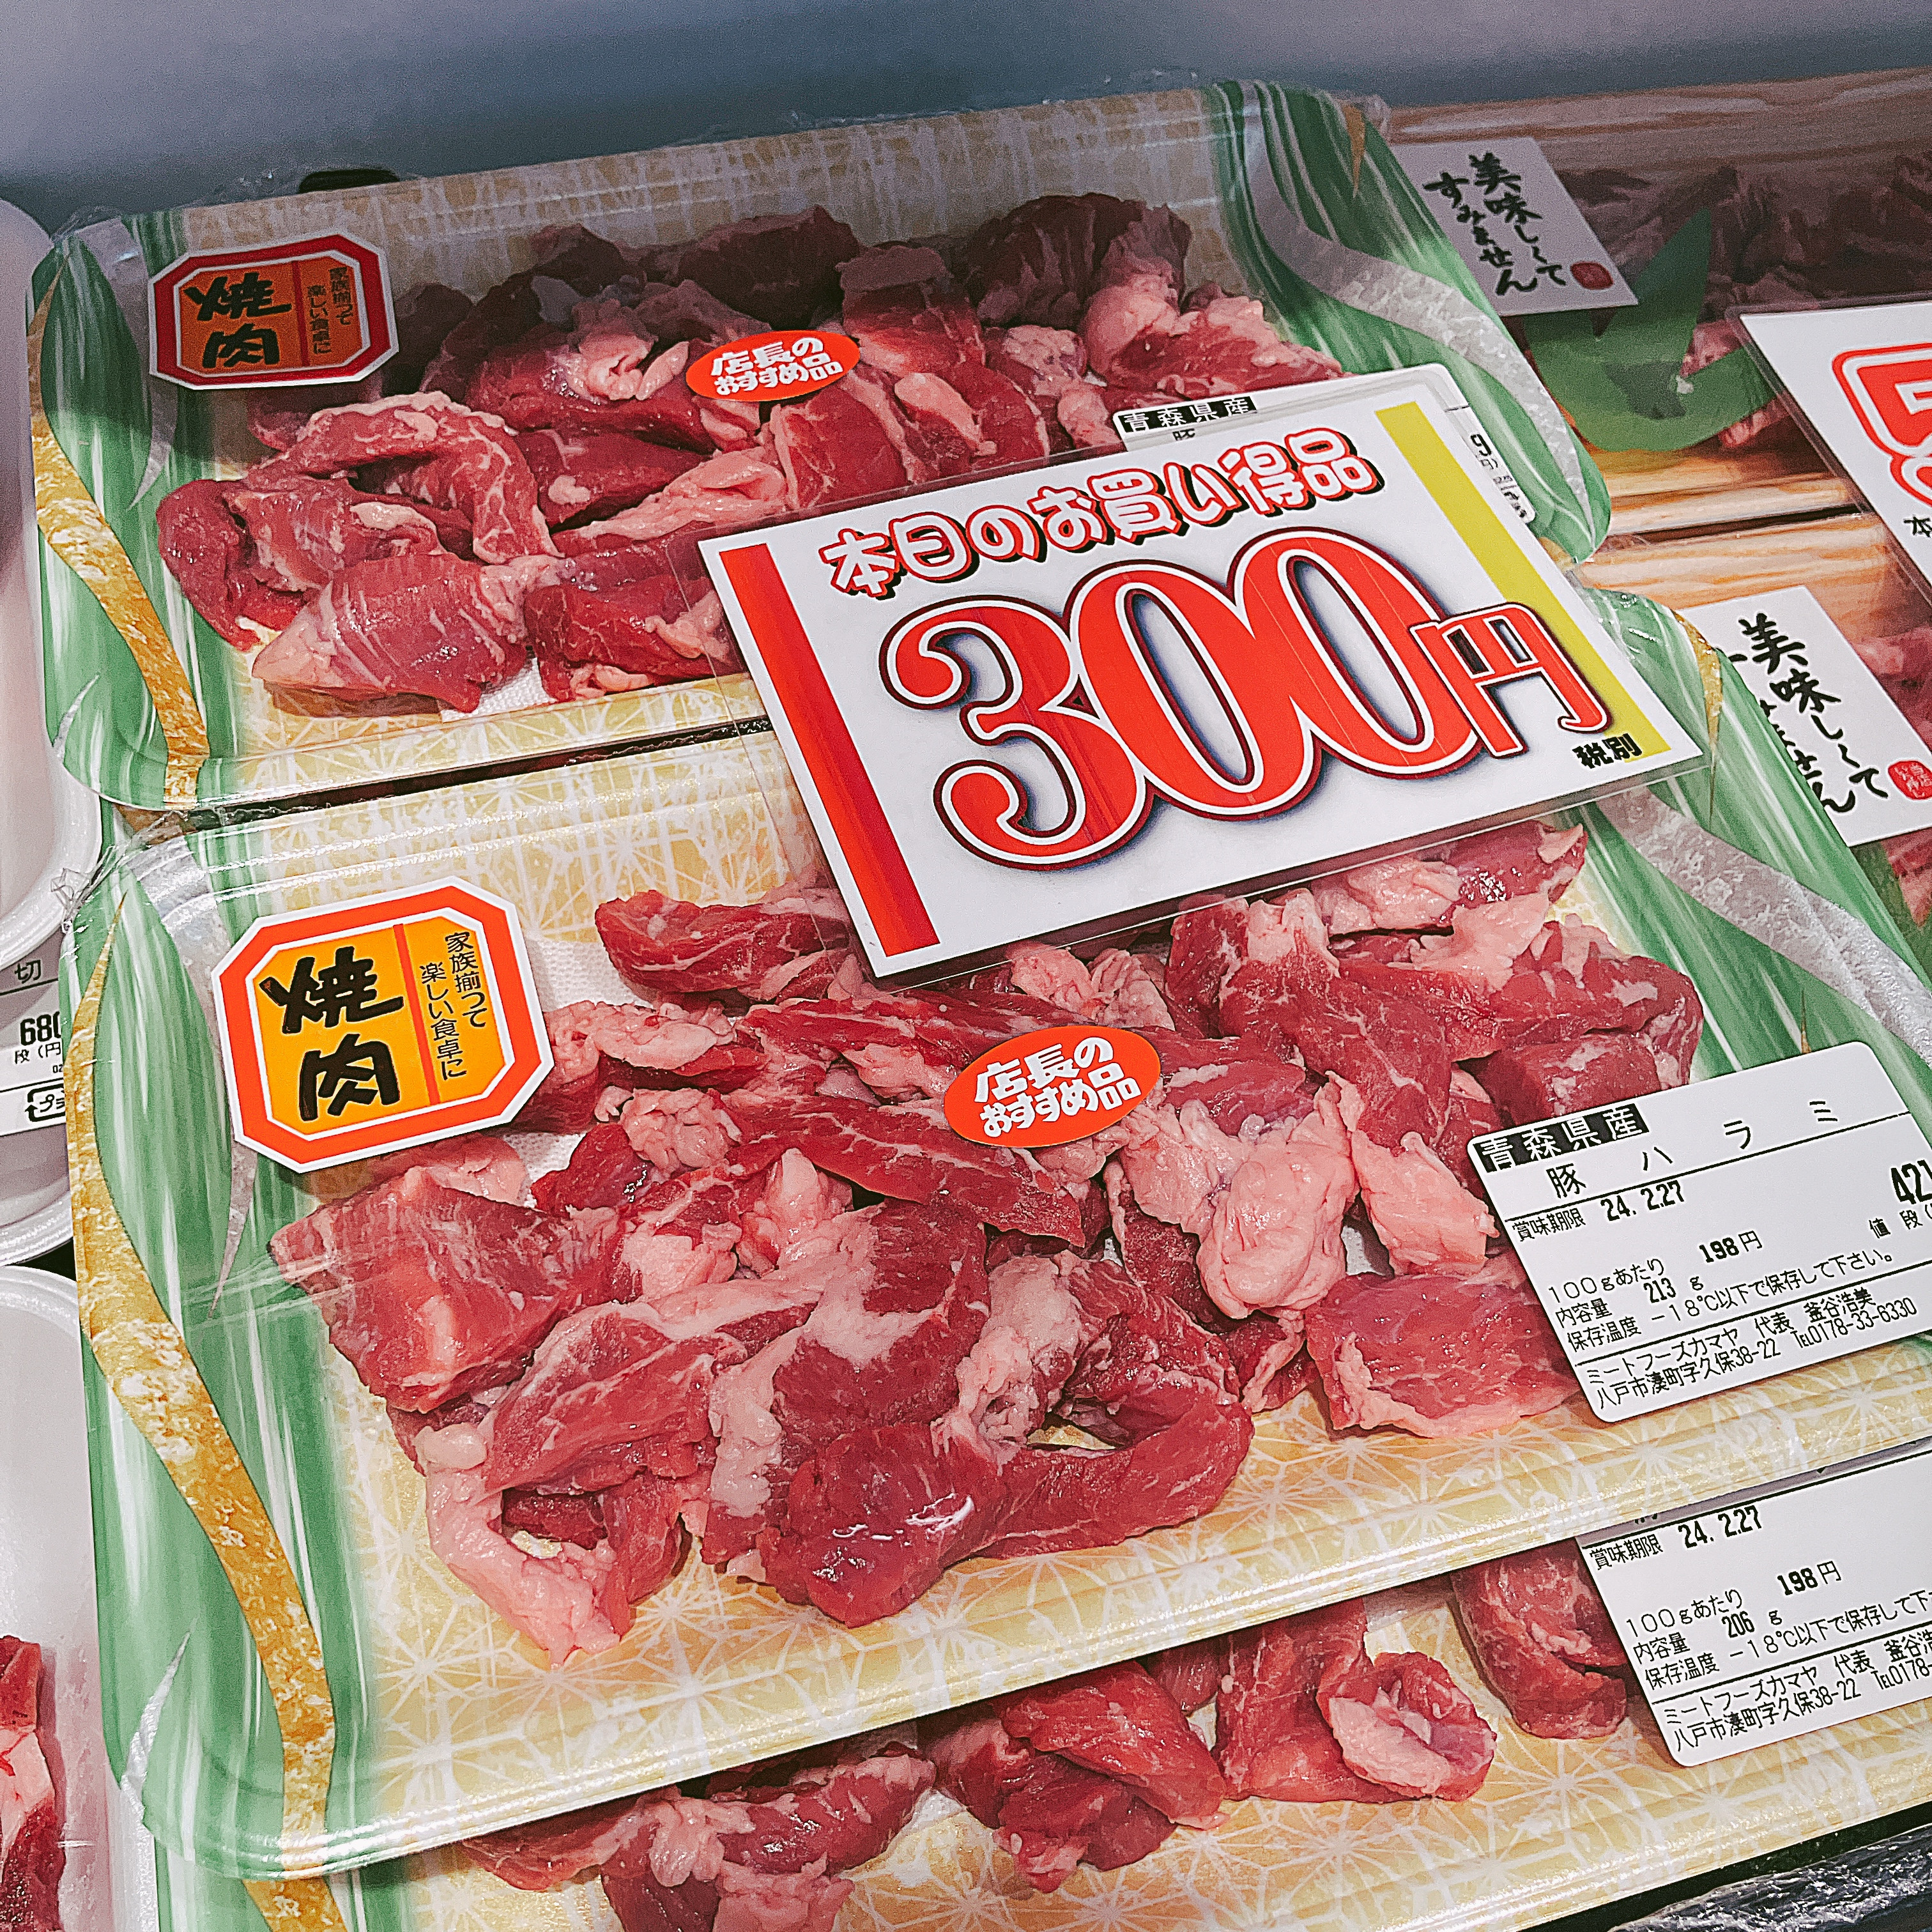 本日は青森県産豚ハラミなどがお買得です。